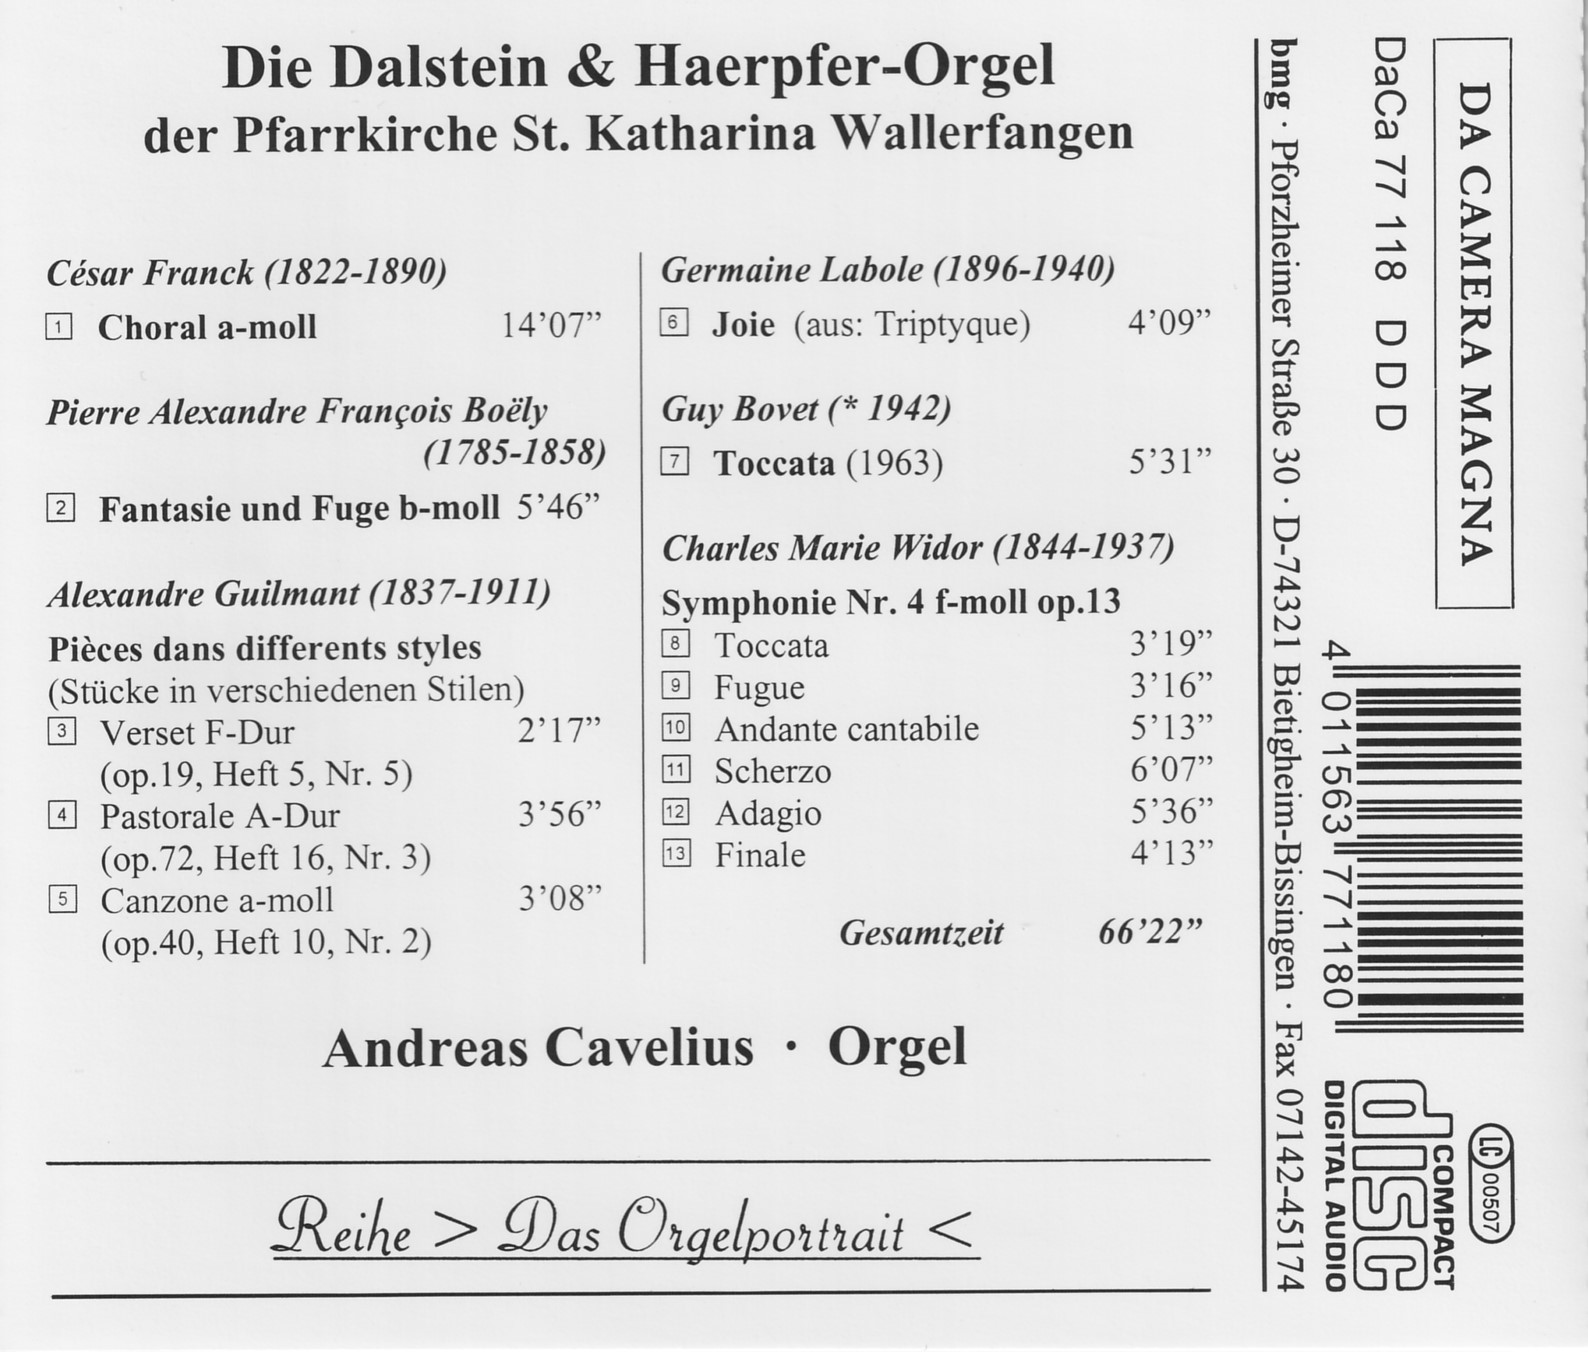 Die Dalstein & Haerpfer-Orgel Wallerfangen